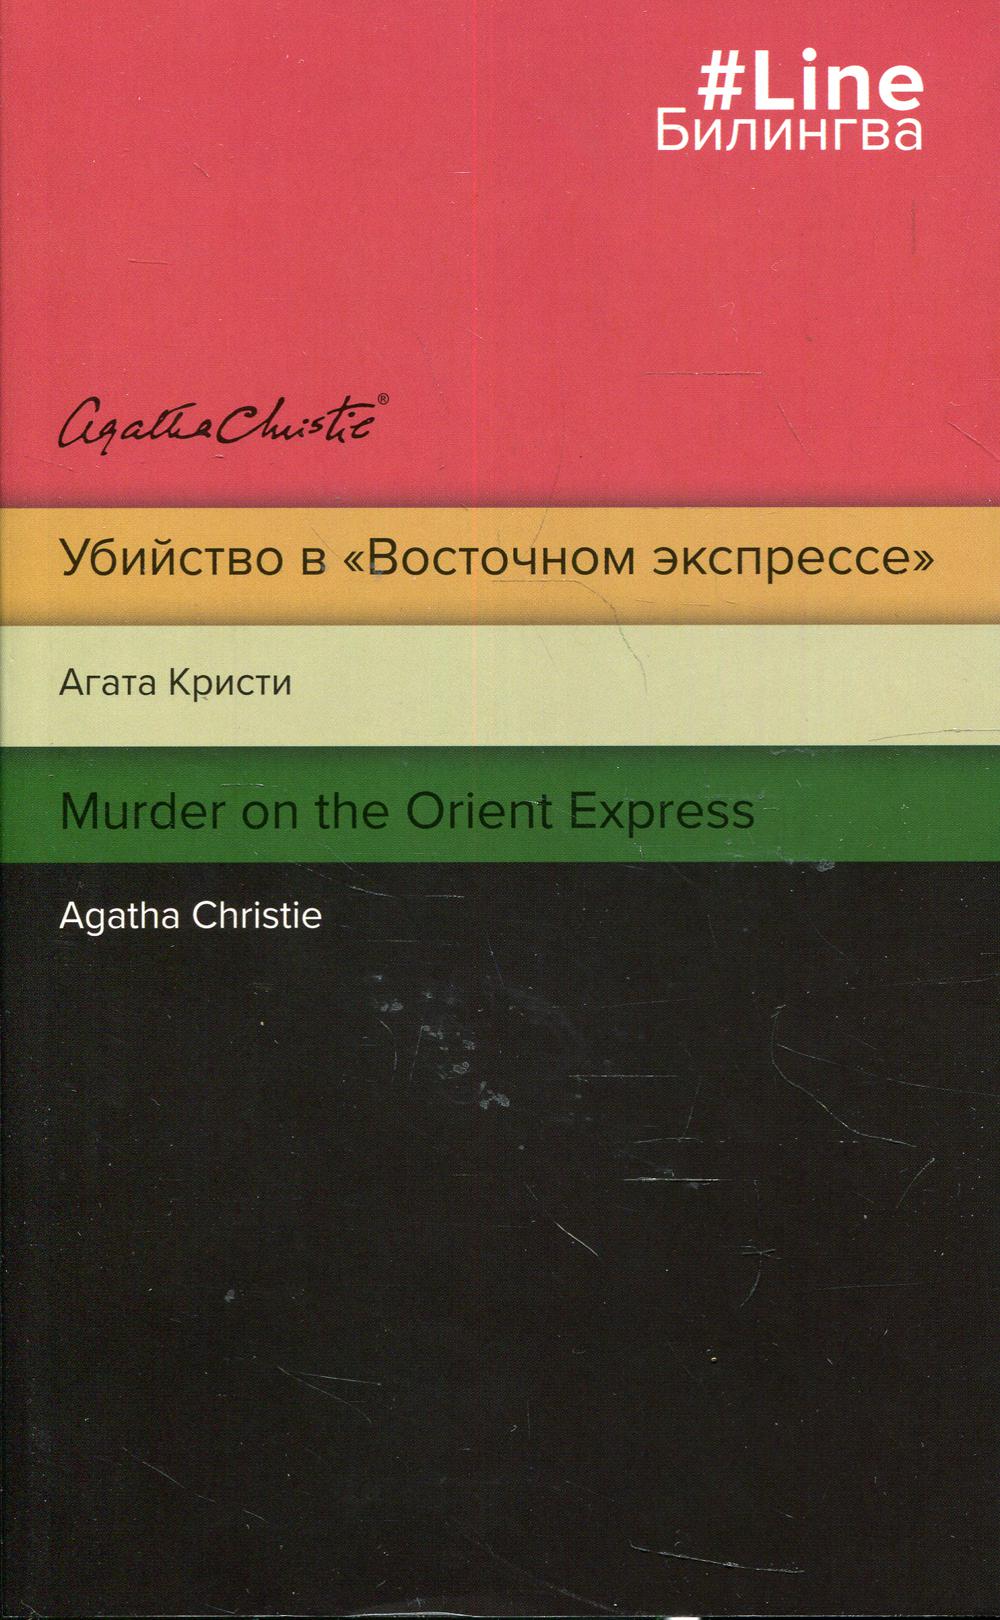 Убийство в «Восточном экспрессе». Murder on the Orient Express